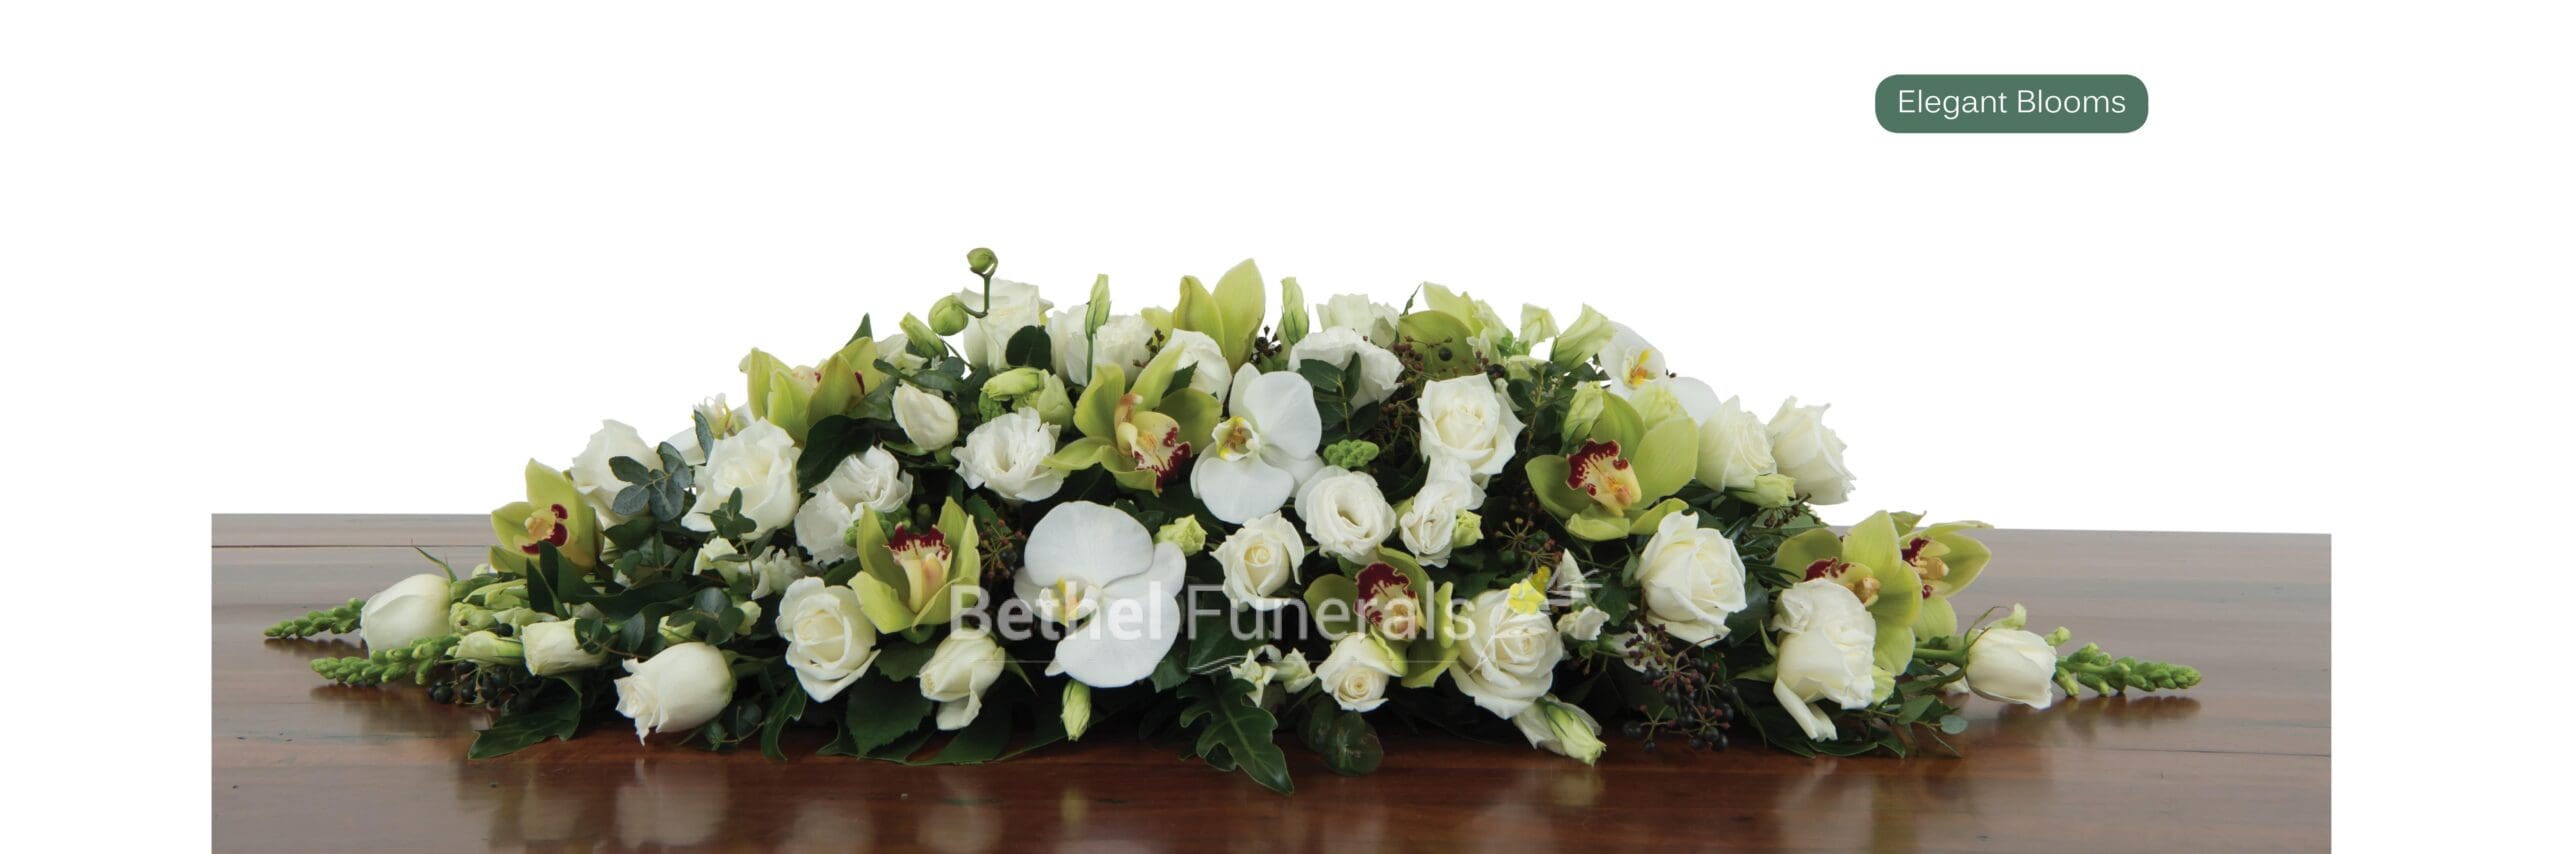 Elegant Blooms Funeral Flowers